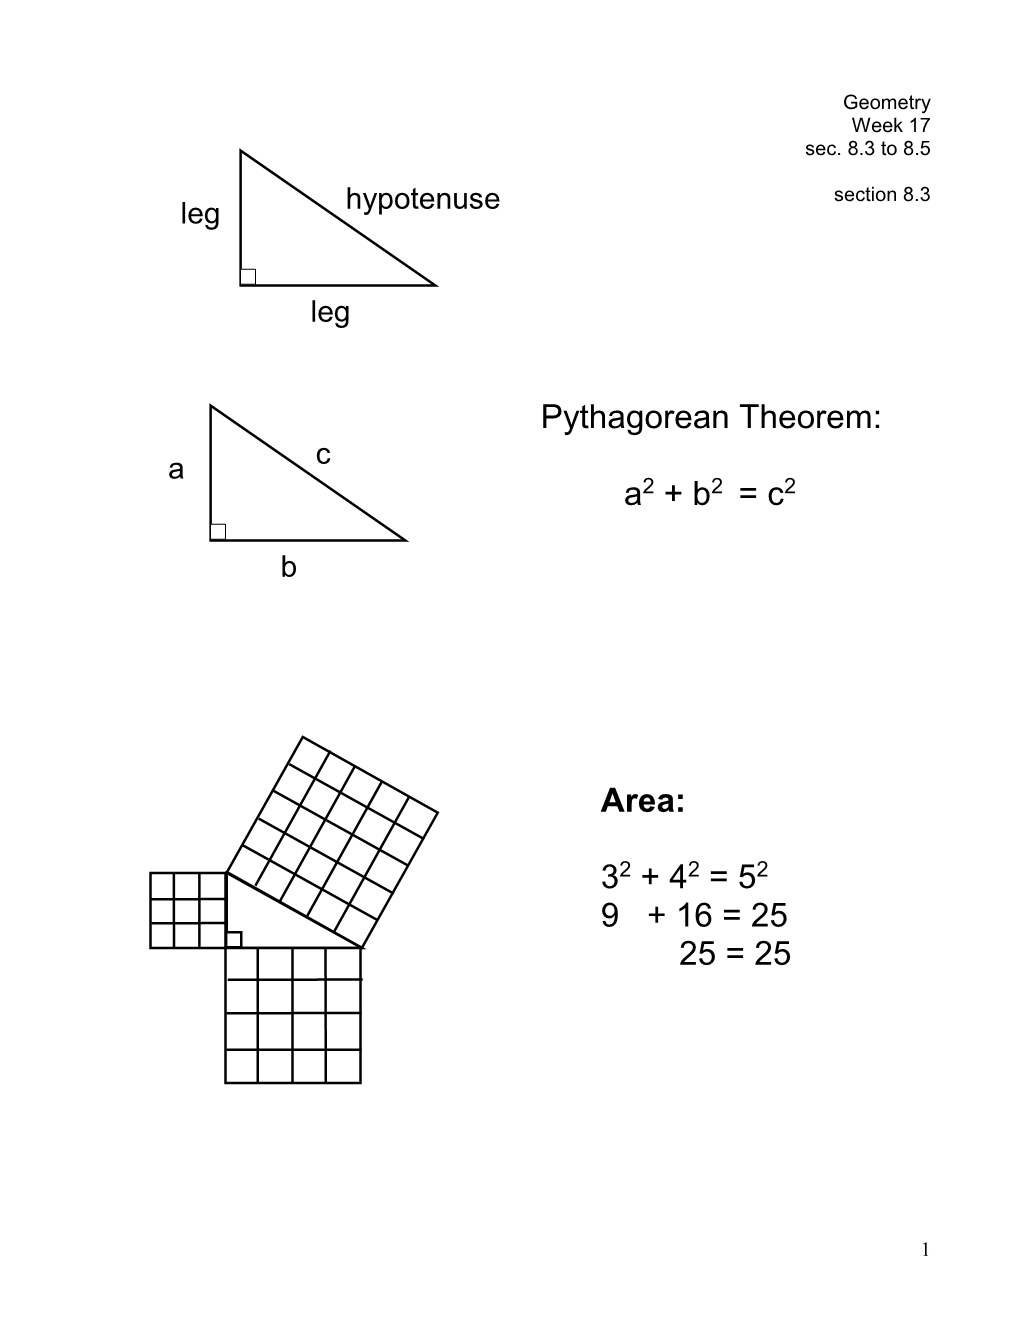 Pythagorean Theorem: A2 + B2 = C2 Area: 32 + 42 = 52 9 + 16 = 25 25